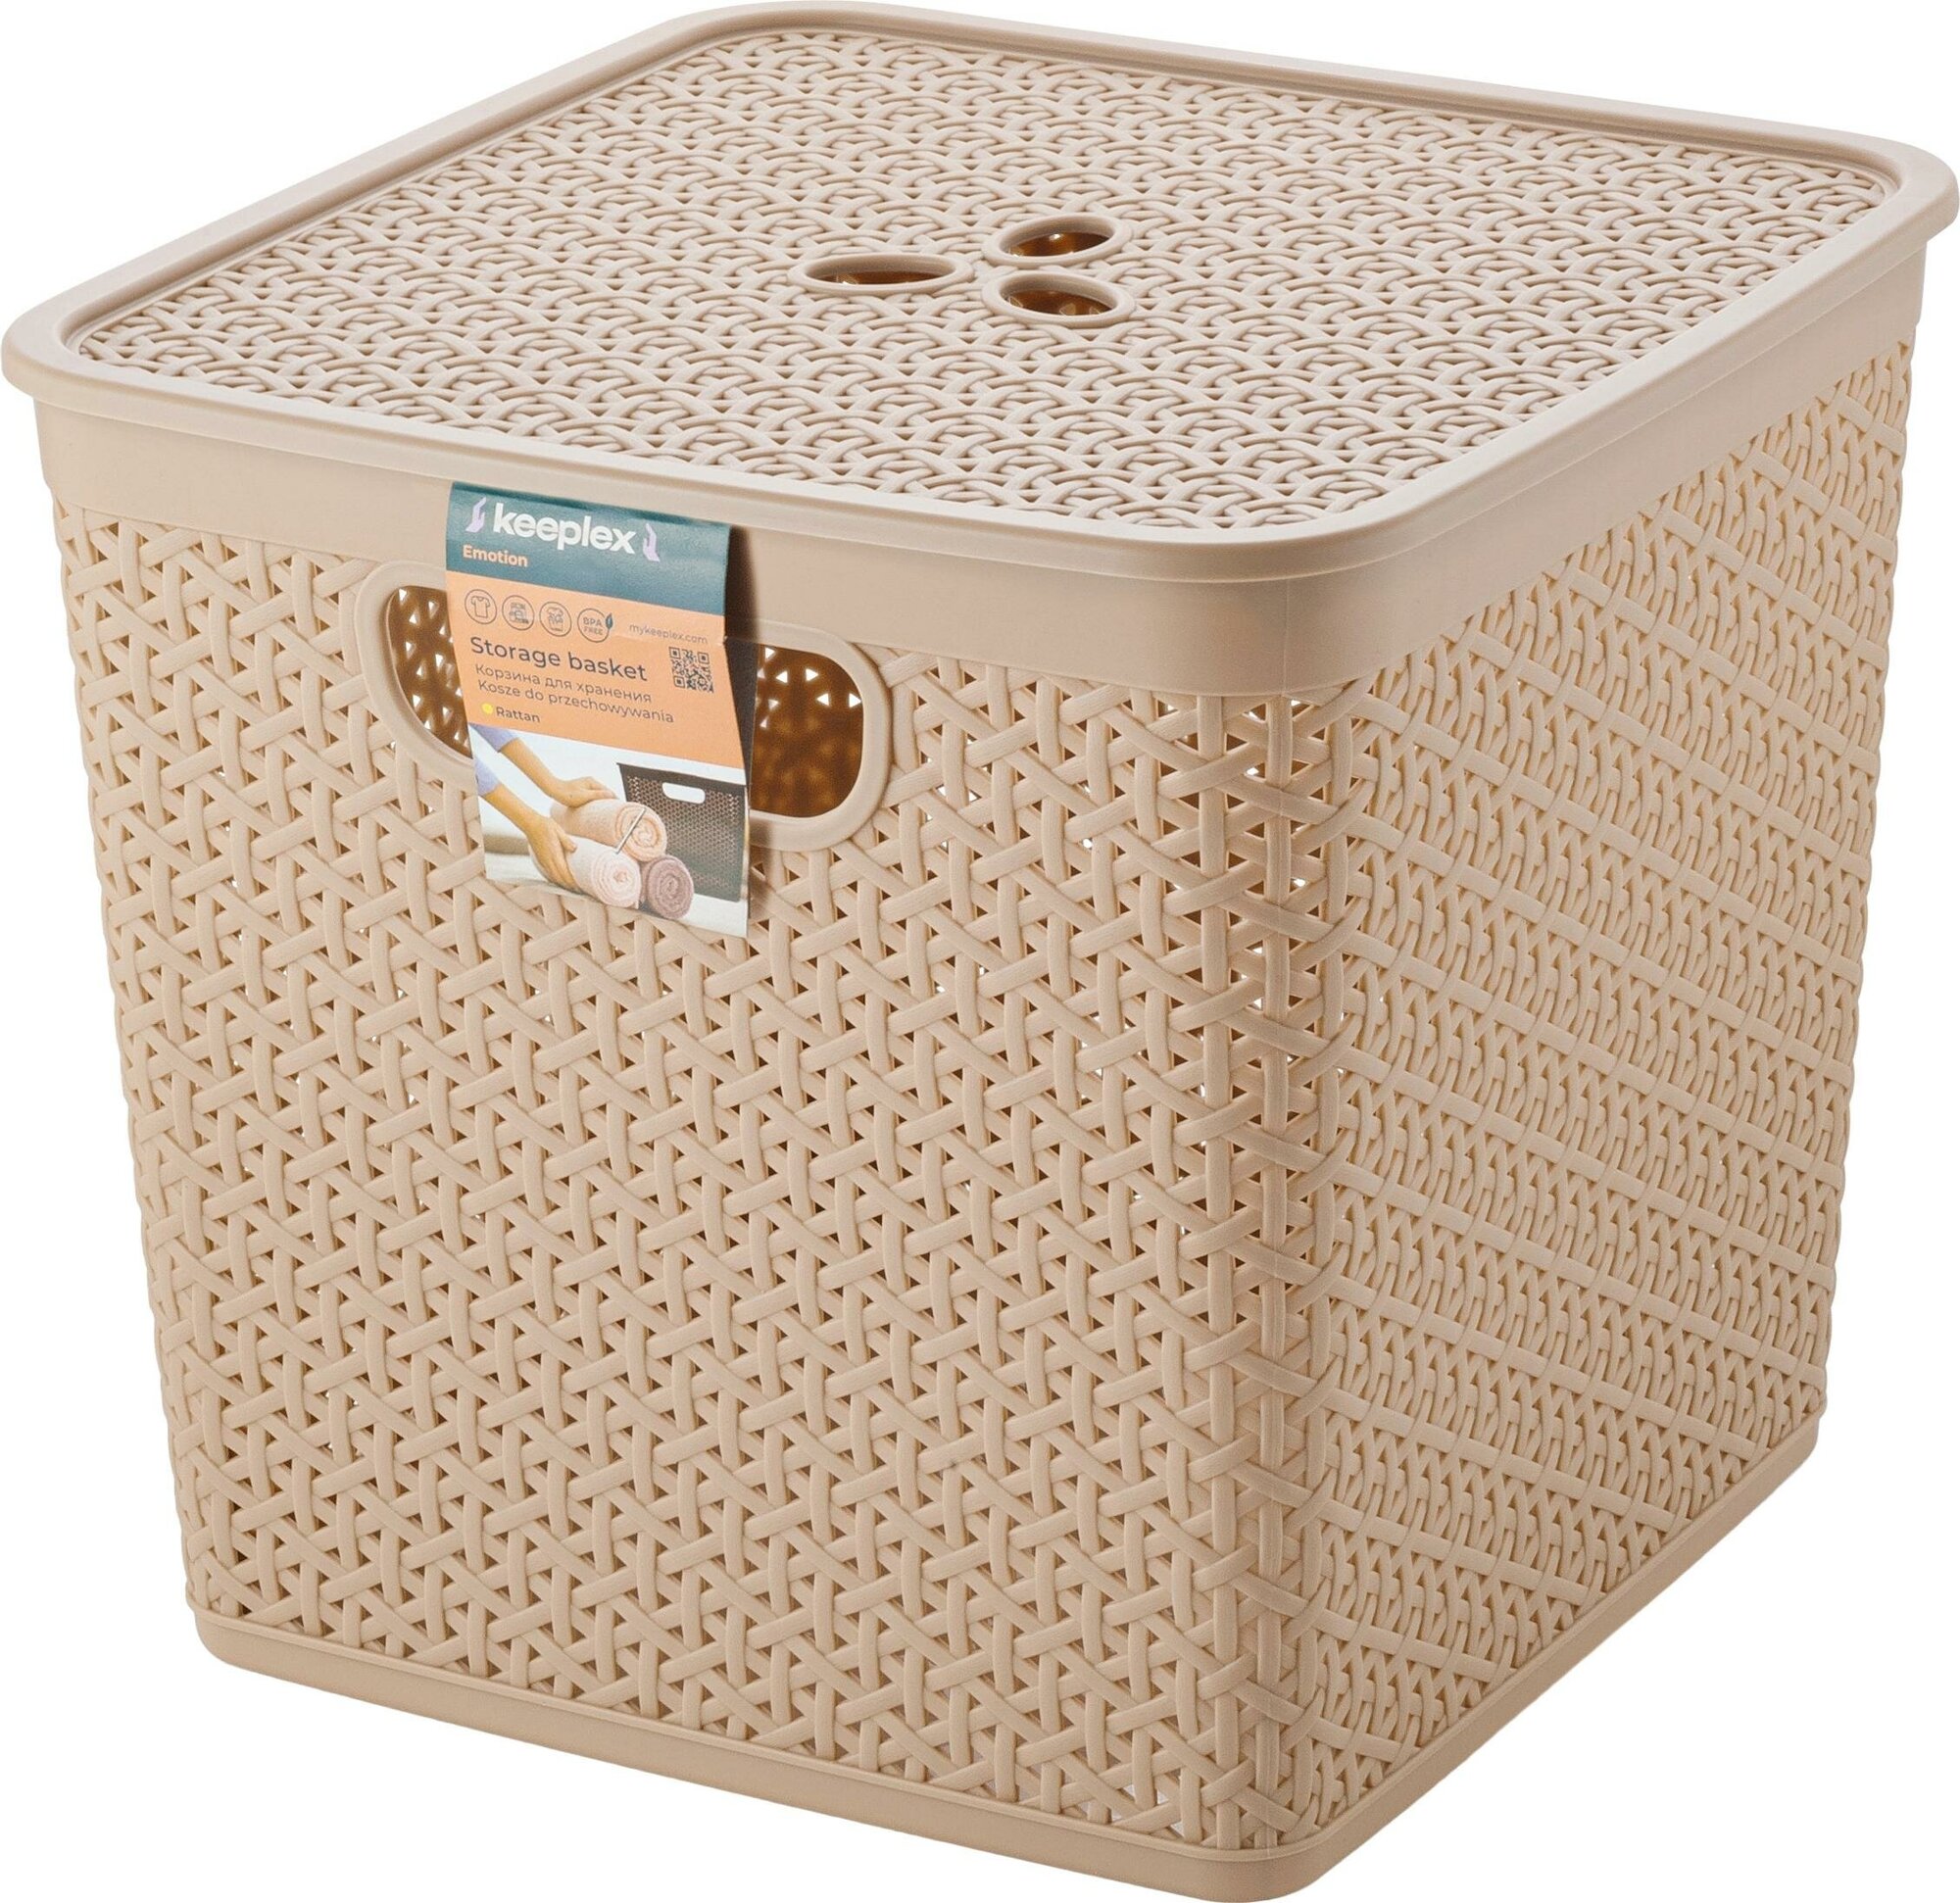 Корзина для хранения Rattan универсальная со съемной крышкой 21 л, коробка 30х30х28см ящик Keeplex контейнер для хранения инструментов игрушек одежды